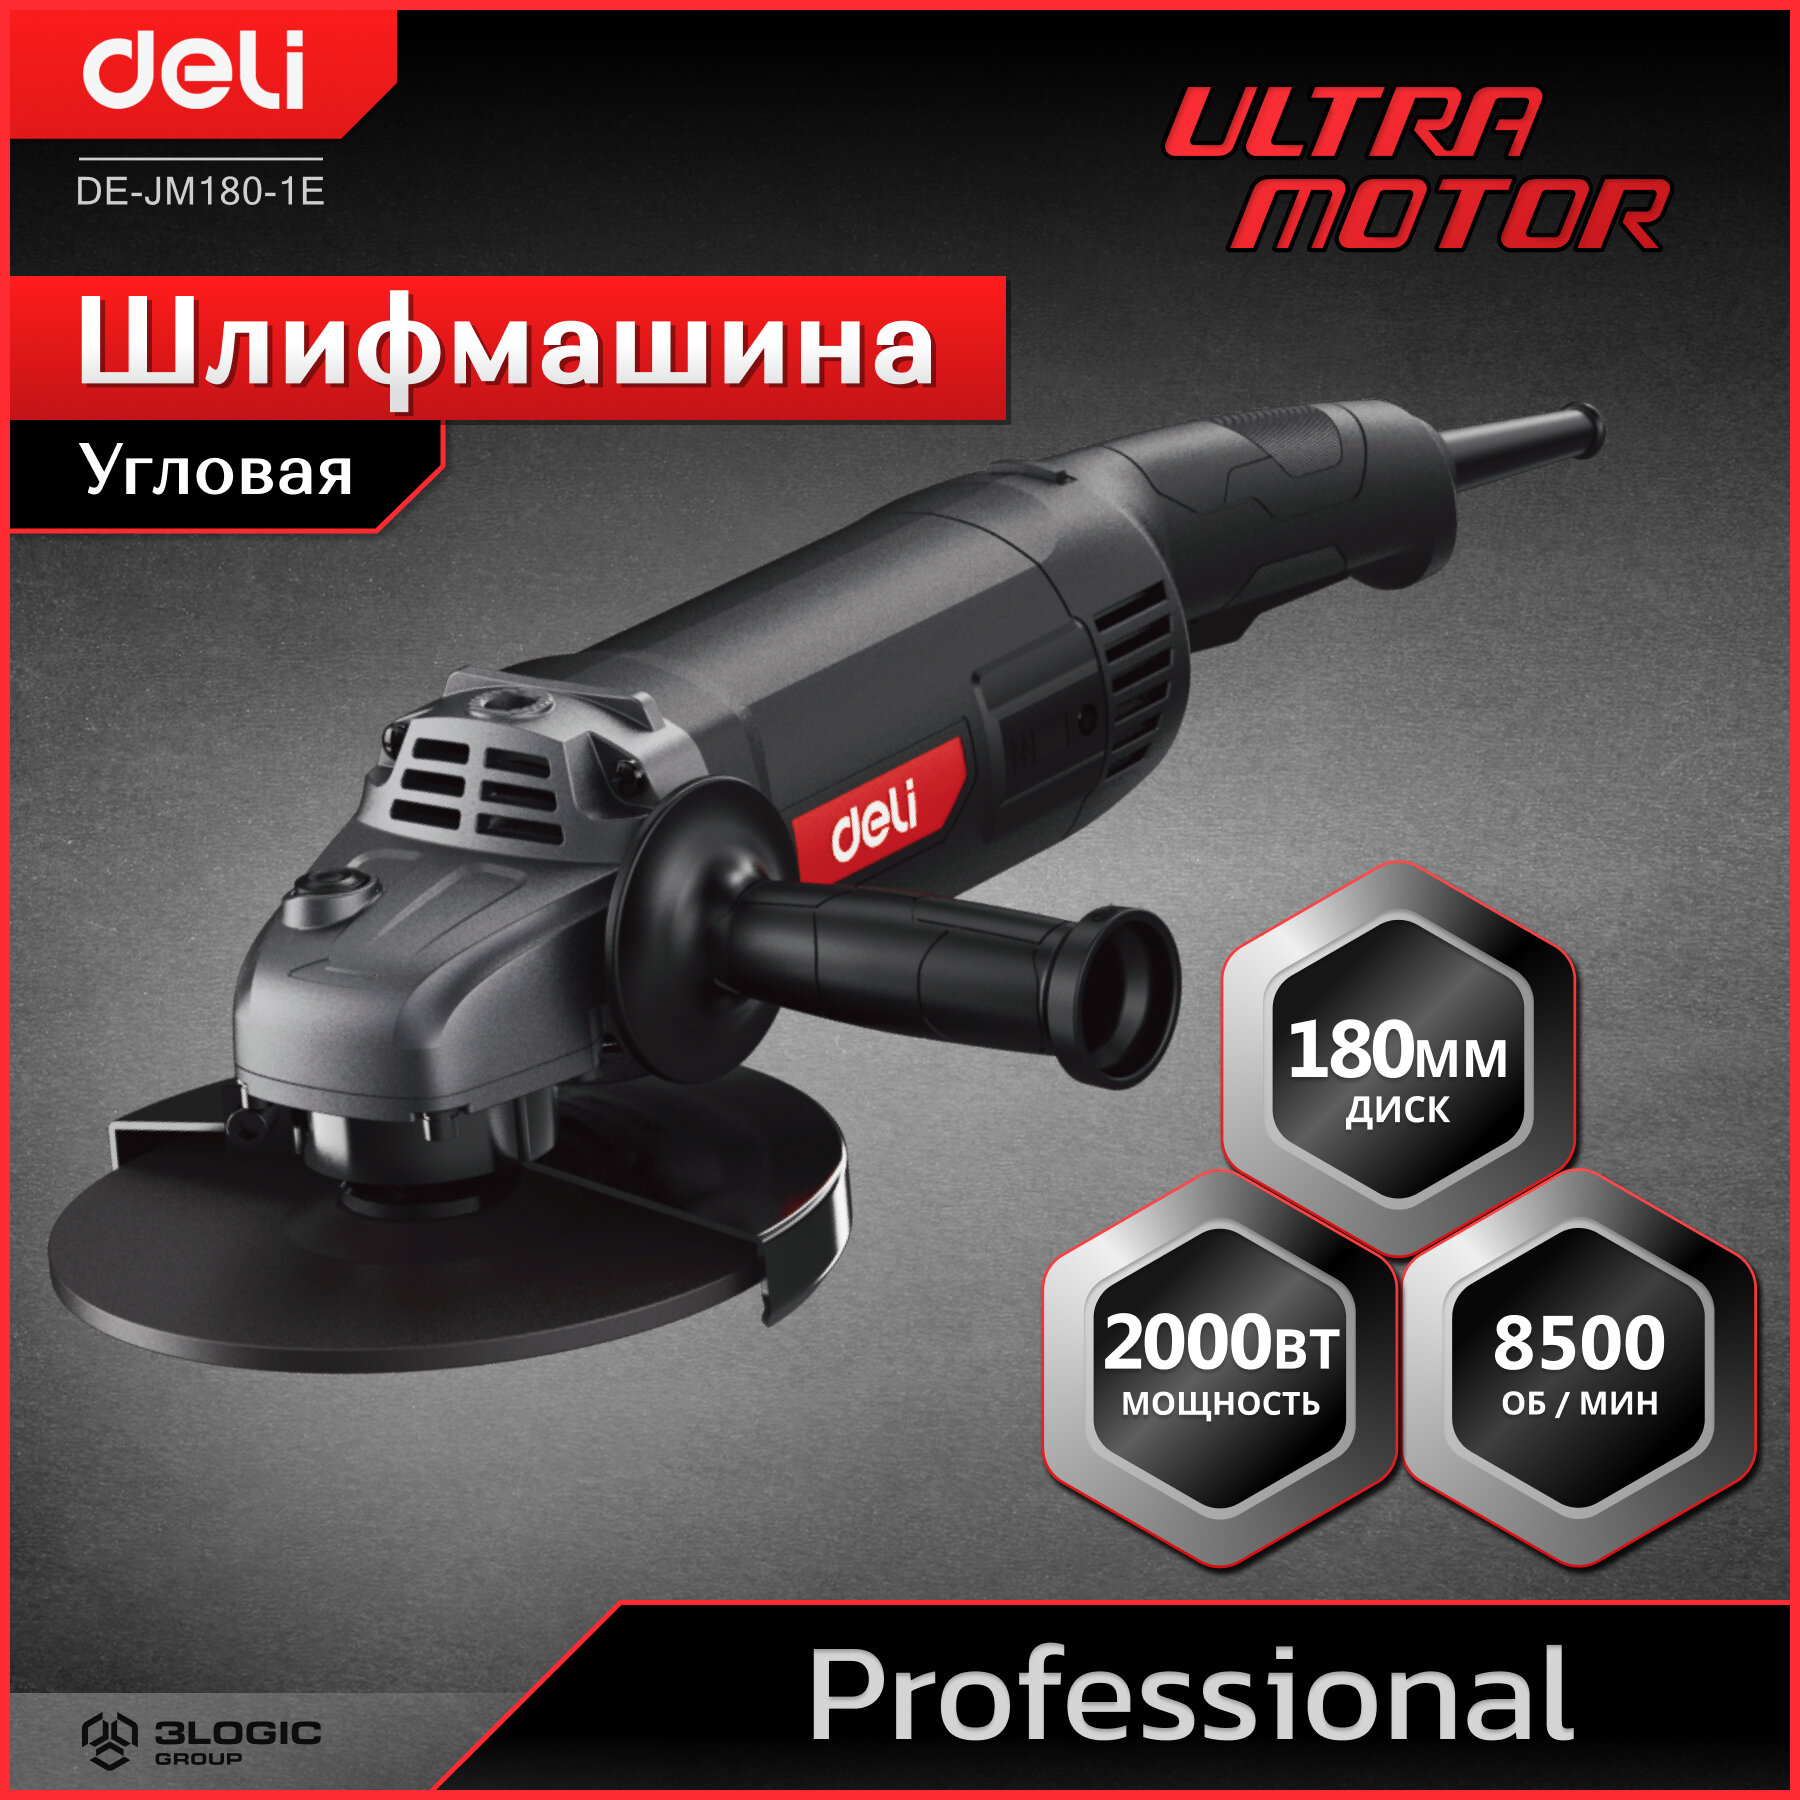 Профессиональная угловая шлифмашина (болгарка) Deli DE-JM180-1E (2000Вт, диск 180мм, 8500 об/мин, Ultra Motor)